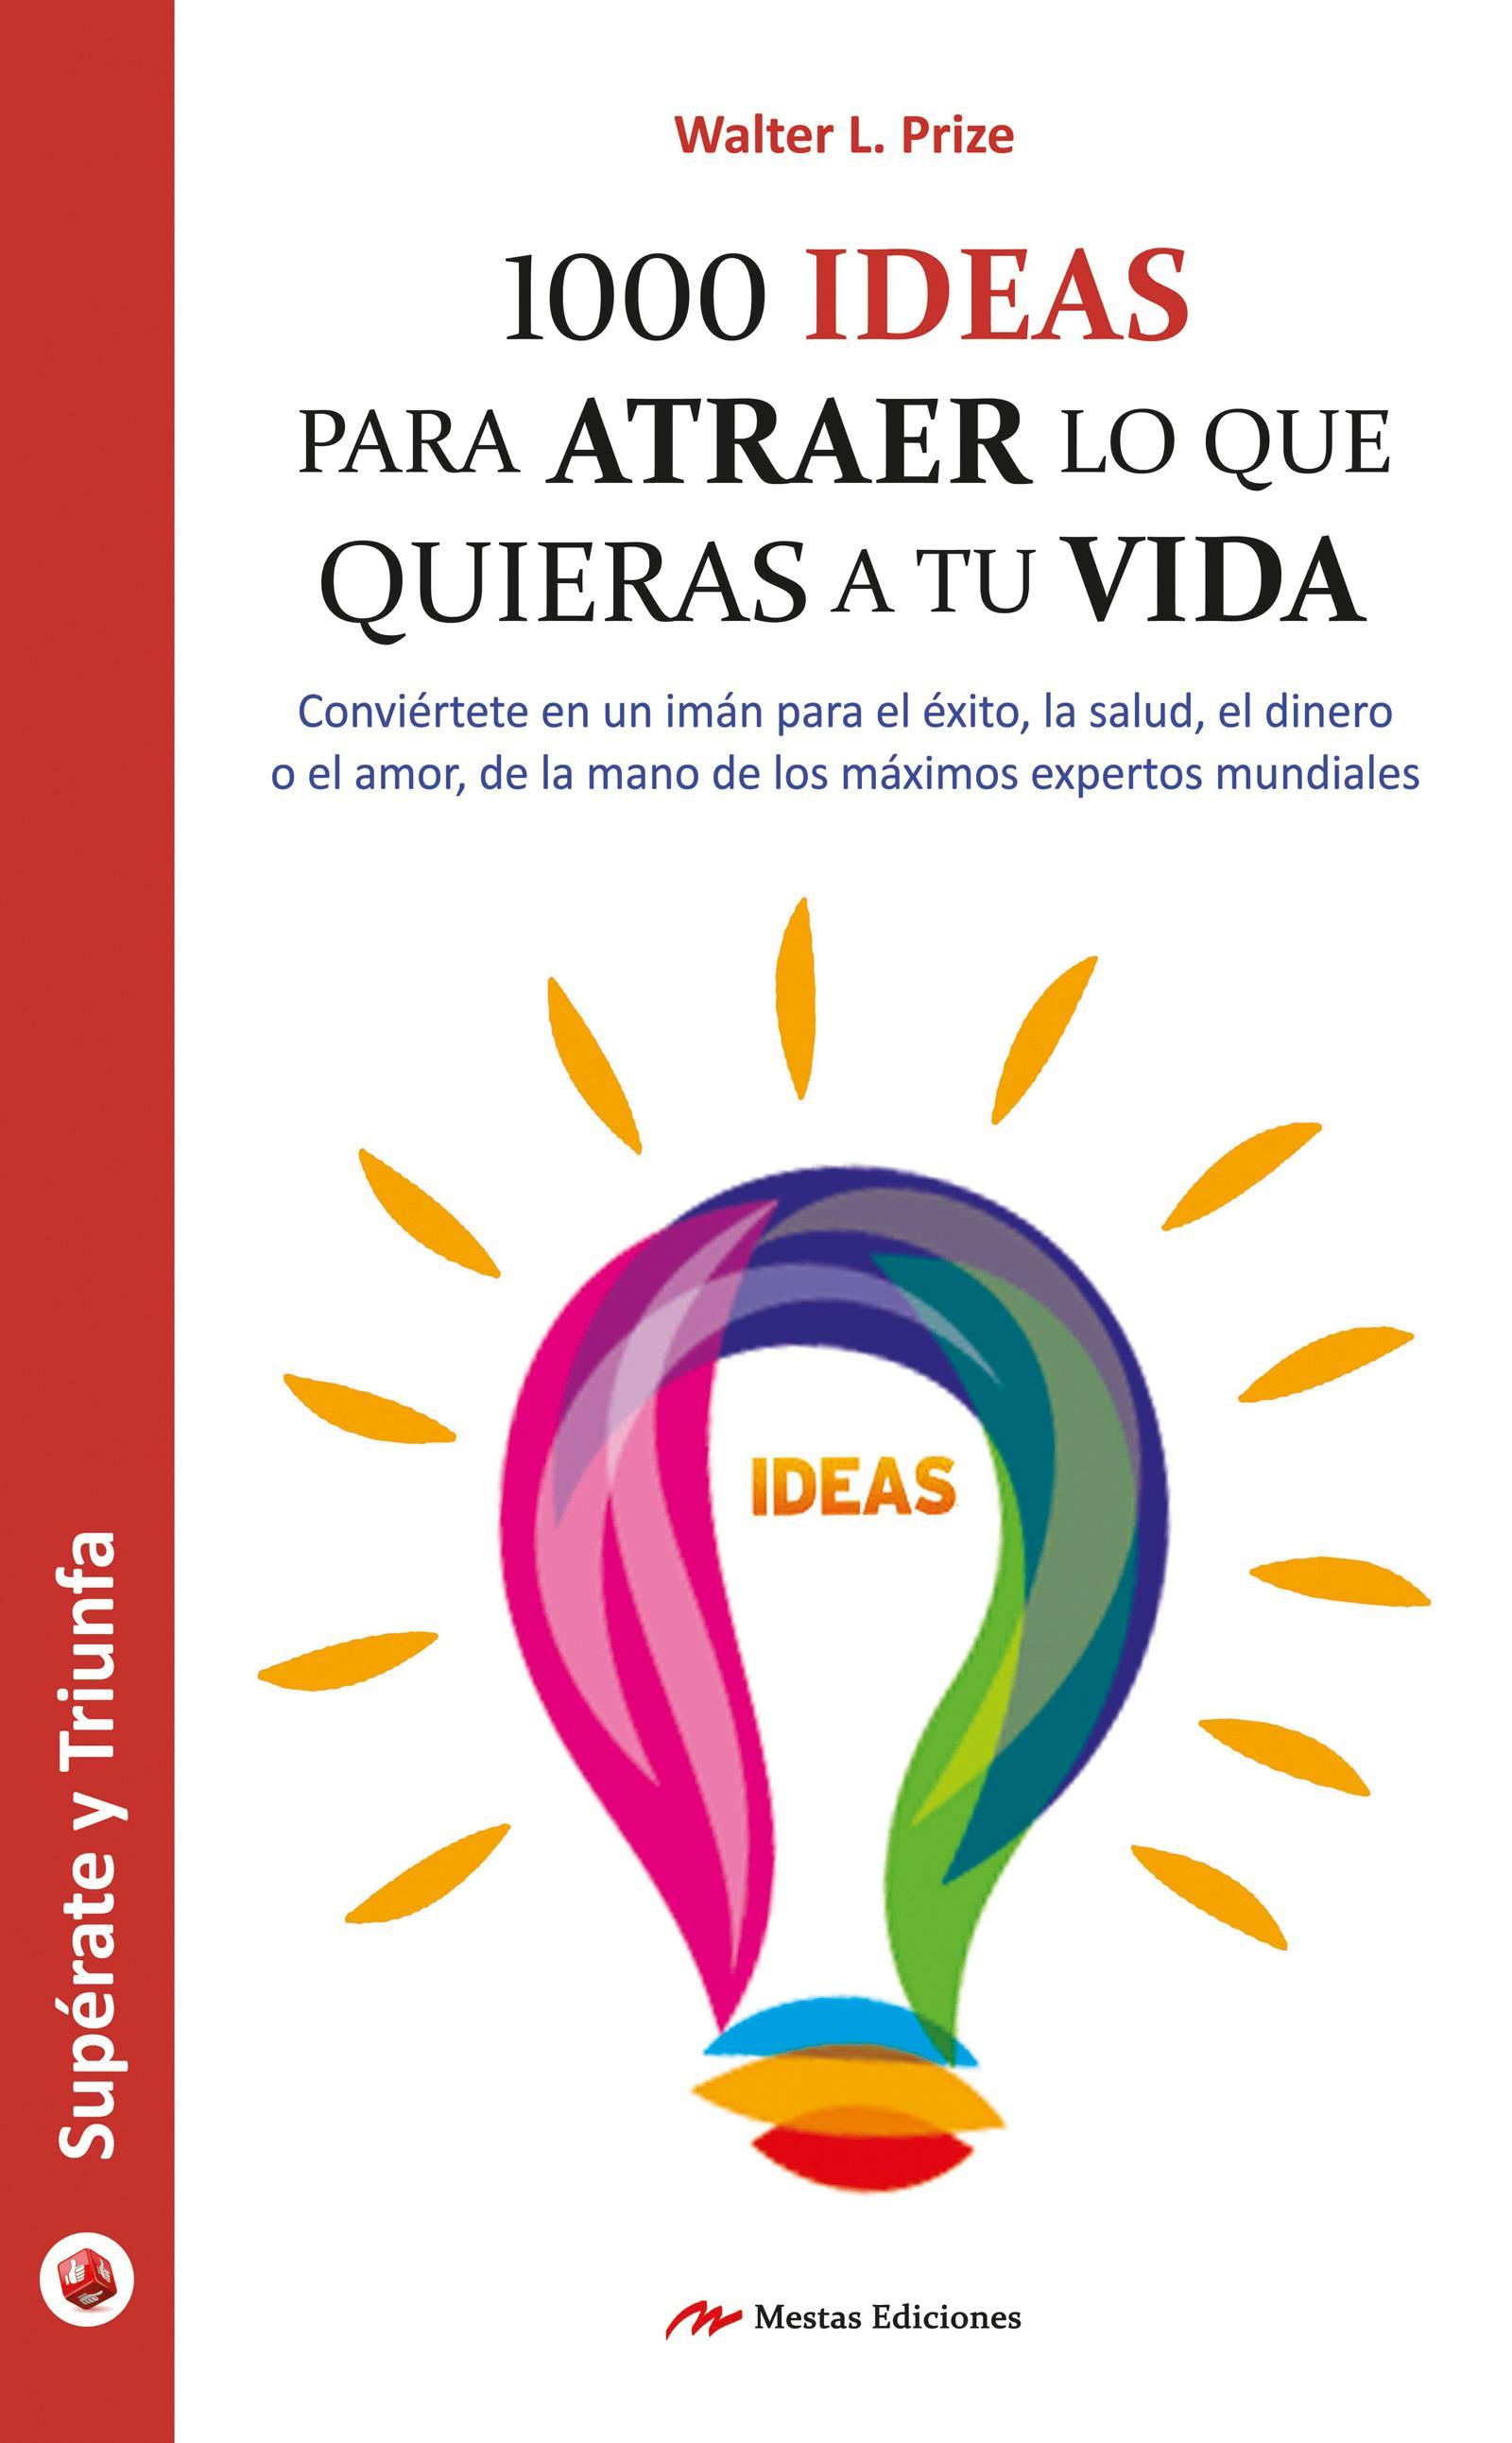 1000 ideas para atraer lo que quieras a tu vida: Guía práctica - Walter L. Prize